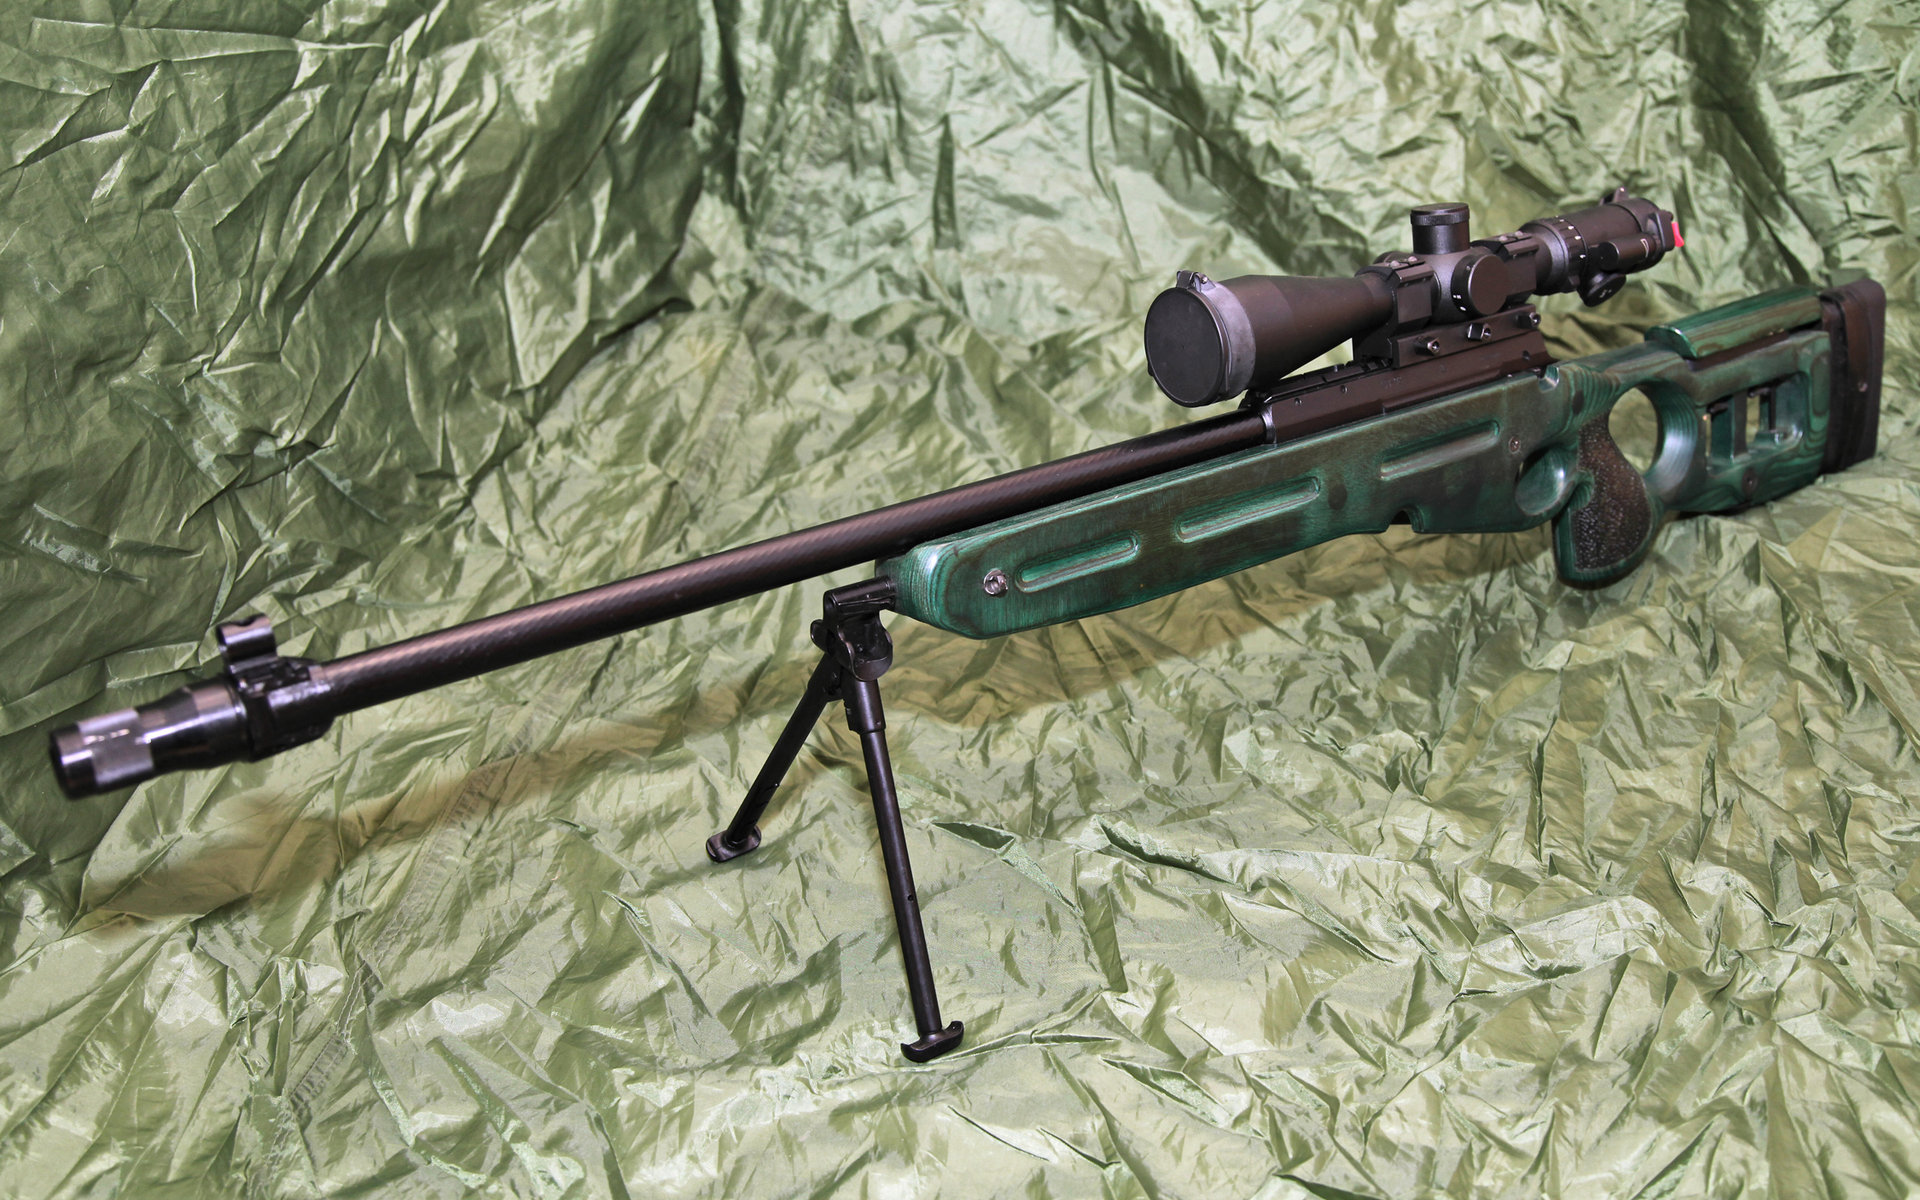 Best Sniper Rifle wallpaper ID:282980 for High Resolution hd 1920x1200 desktop